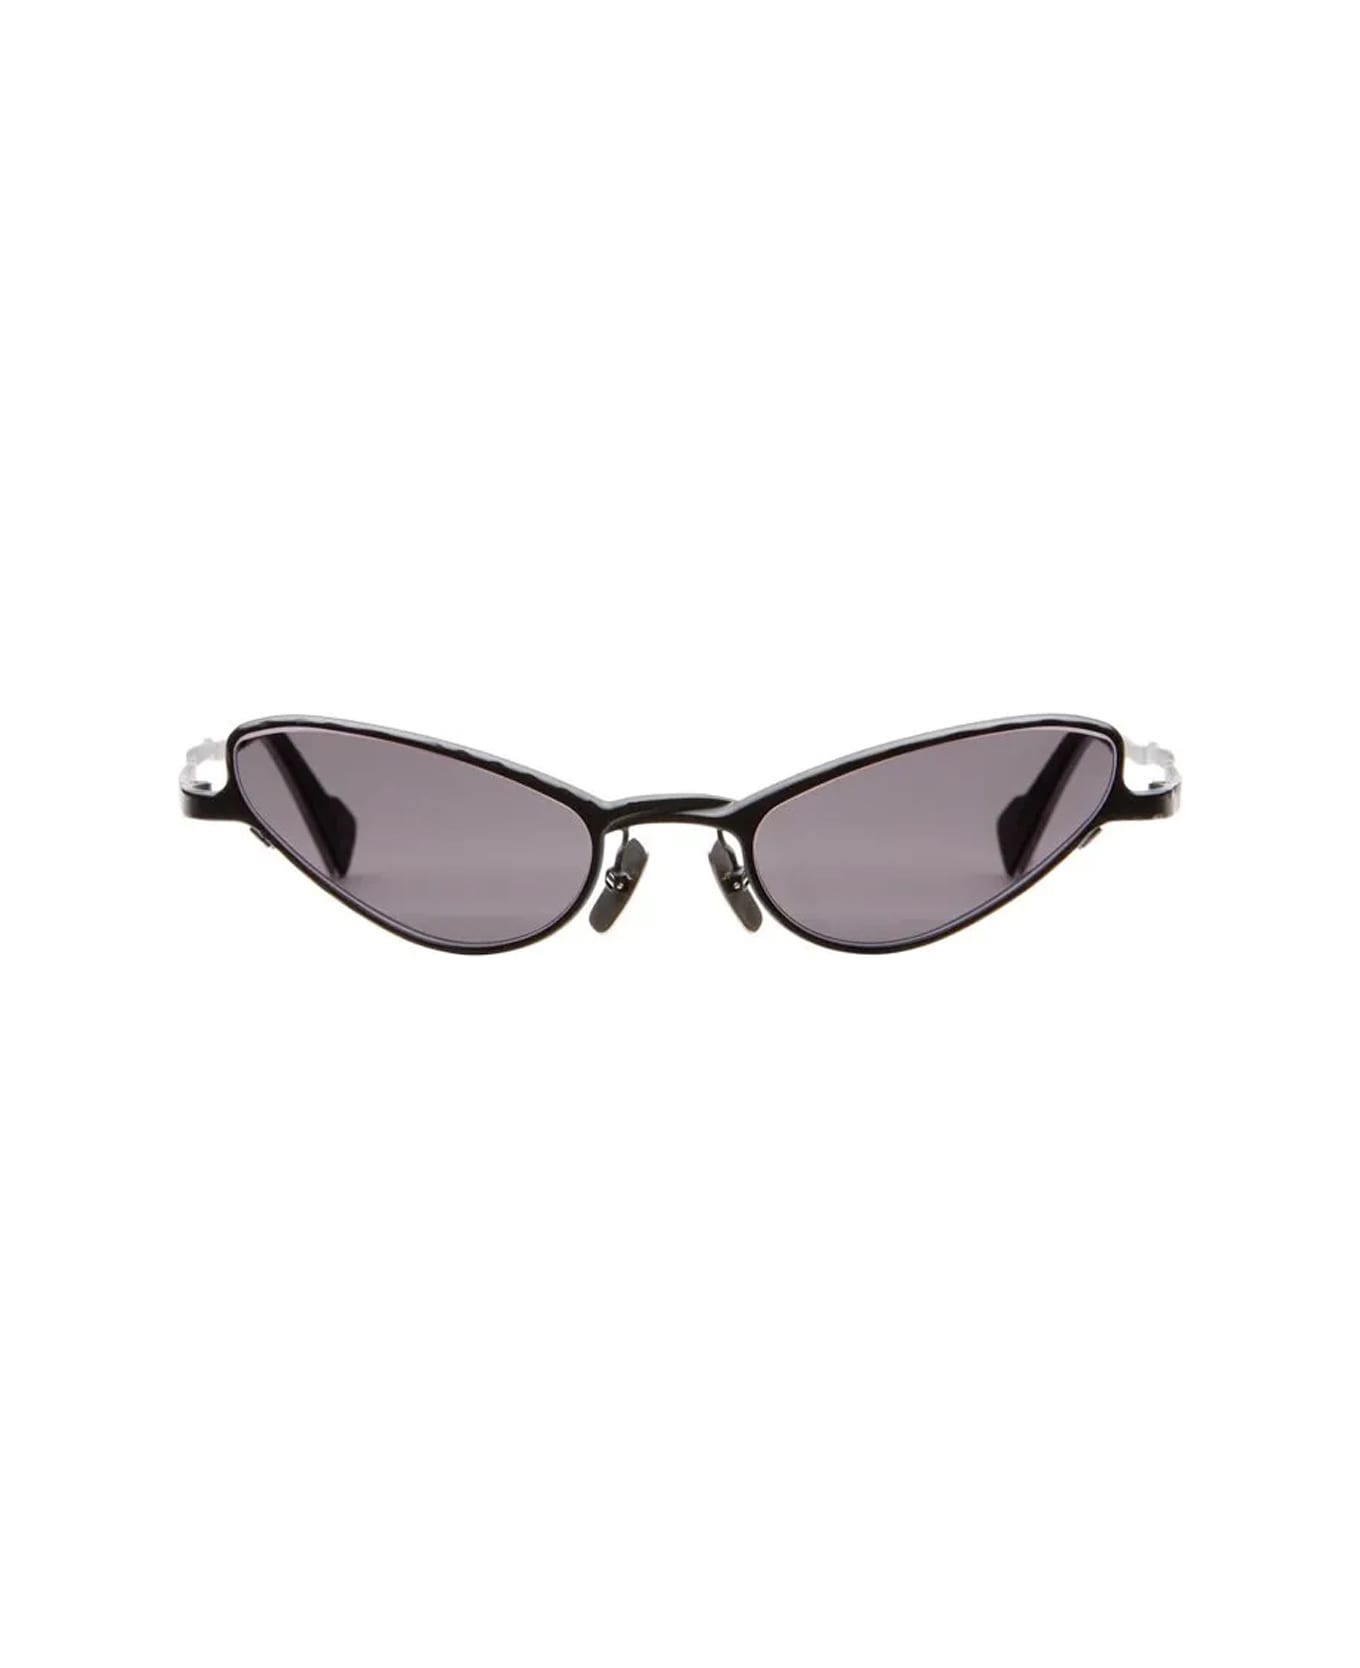 Kuboraum Maske Z22 Bm 2grey Sunglasses - Nero